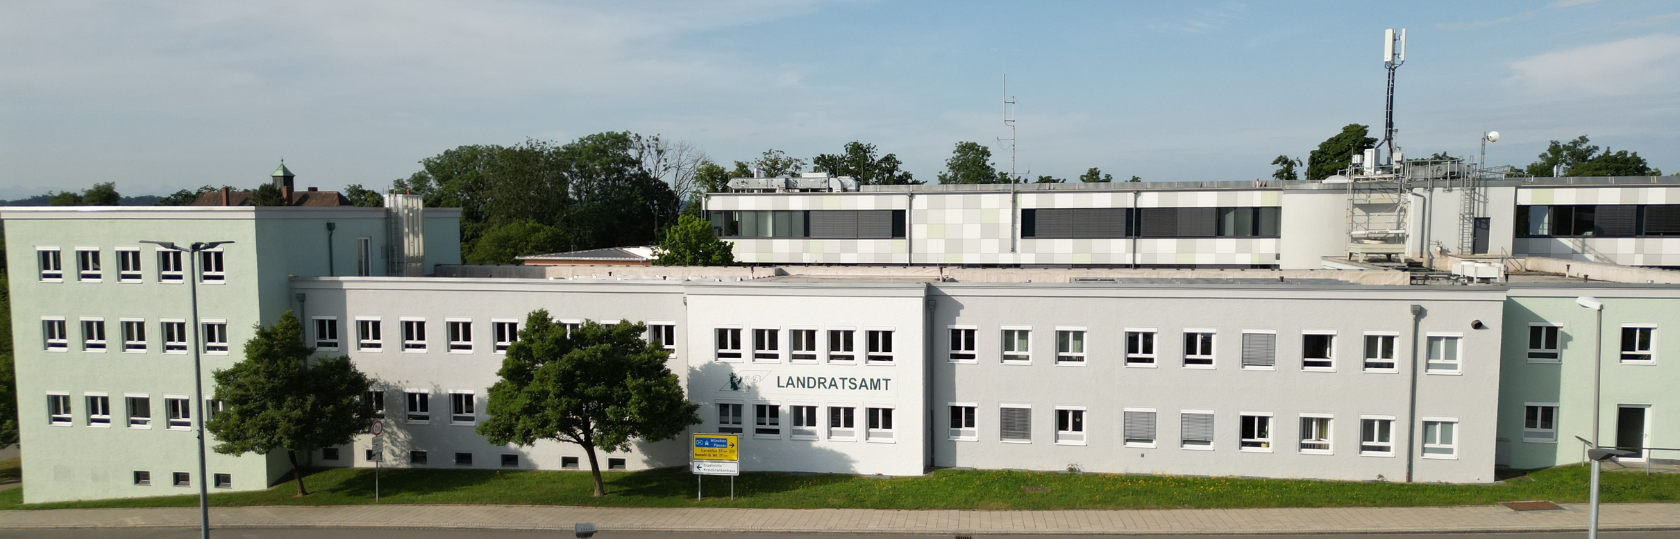 Landratsamt Mühldorf a. Inn von oben